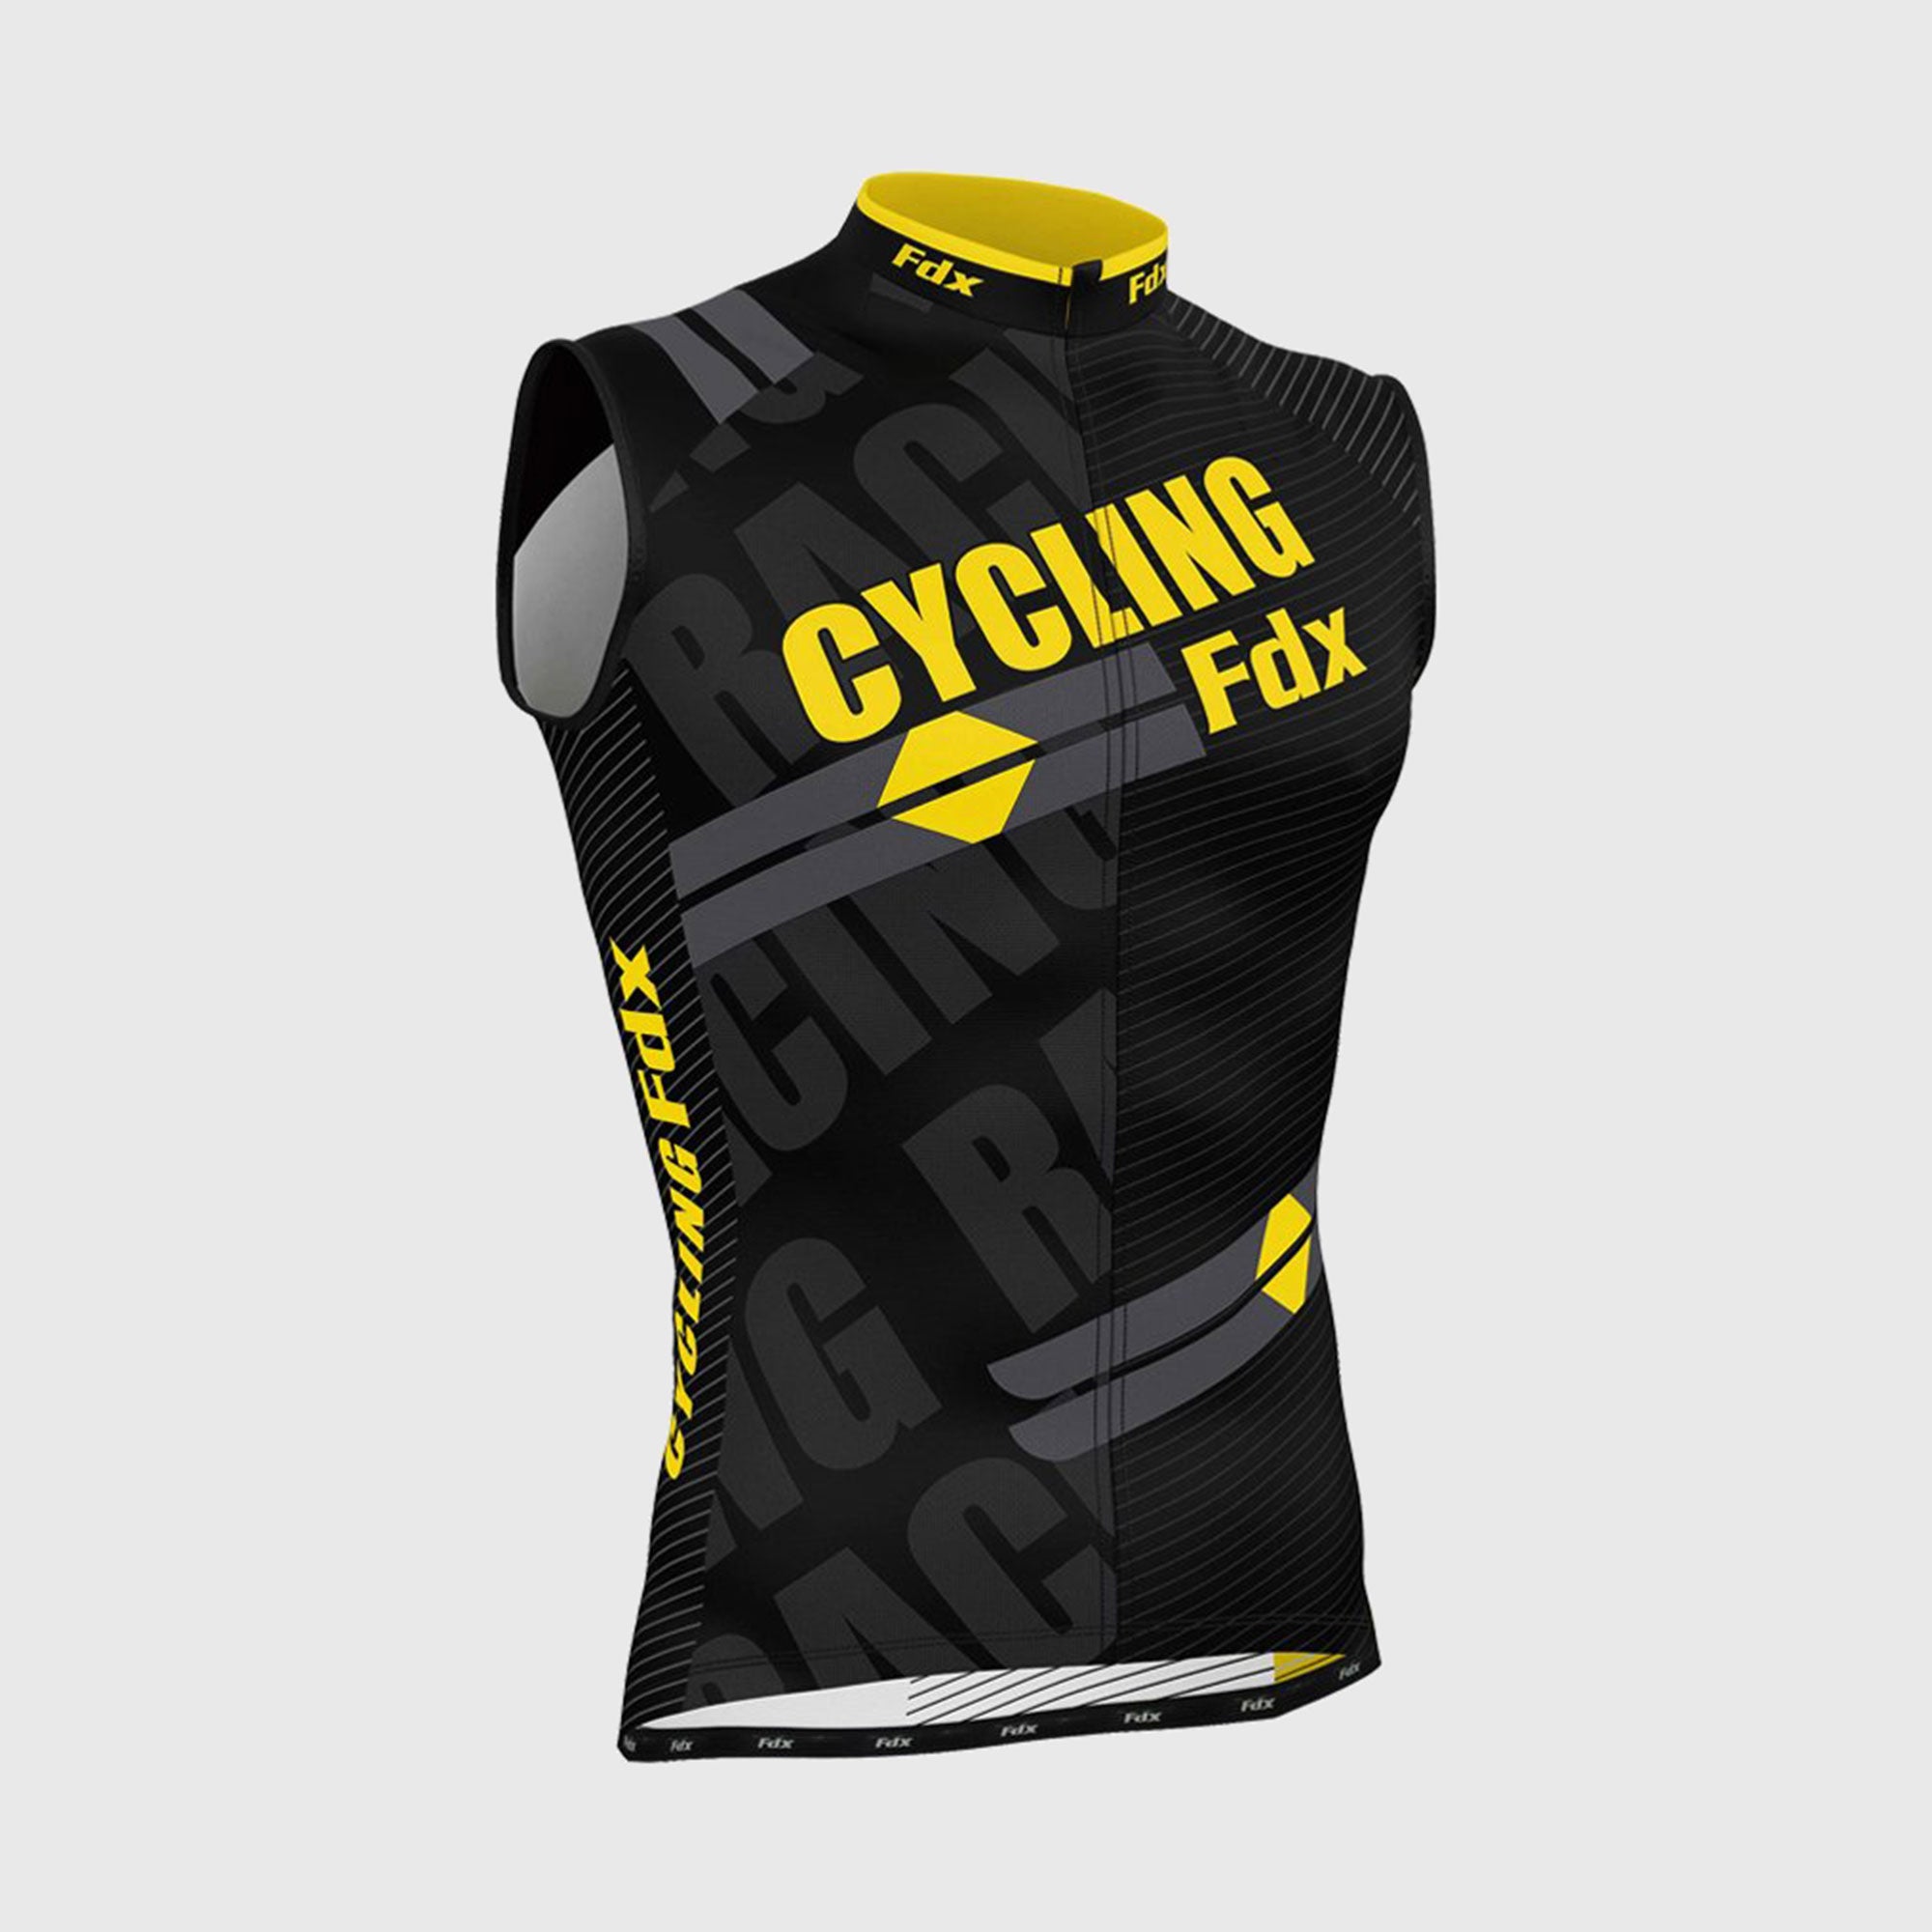 Fdx Mens Black & Yellow Short Sleeve Cycling Jersey for Summer Best Road Bike Wear Top Light Weight, Full Zipper, Pockets & Hi-viz Reflectors - Core